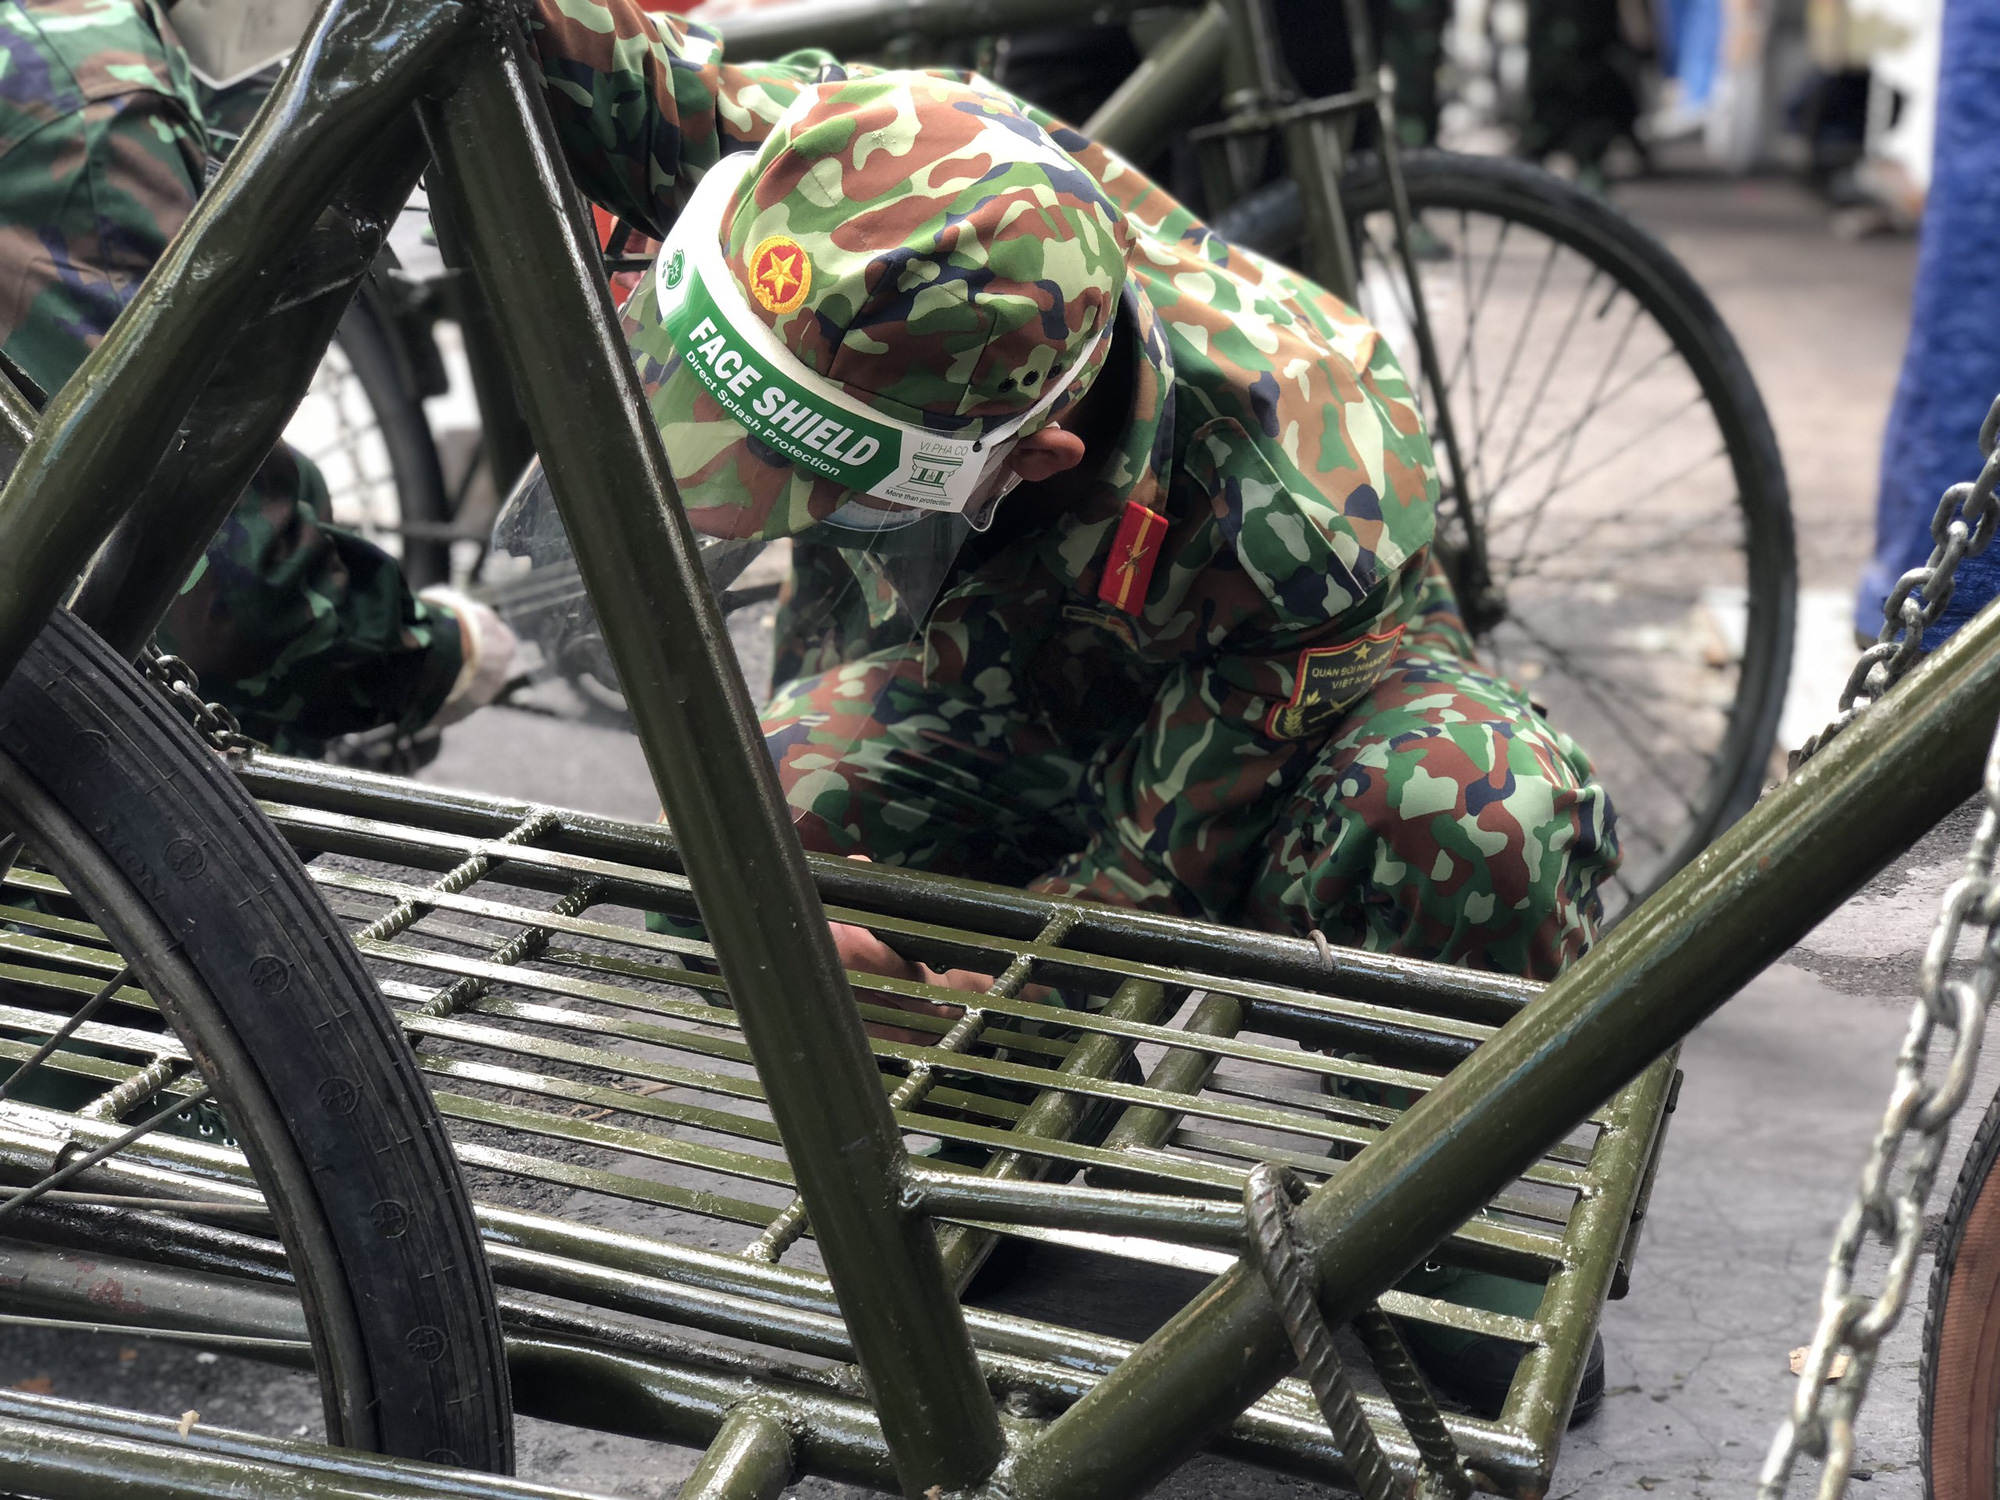 Bộ đội: Hình ảnh về bộ đội là một biểu tượng rất đặc trưng của đất nước và văn hóa Việt Nam. Qua những bức ảnh này, bạn sẽ được khám phá nét đẹp của sự can đảm, sự hy sinh và tình yêu đất nước của các chiến sĩ bộ đội.